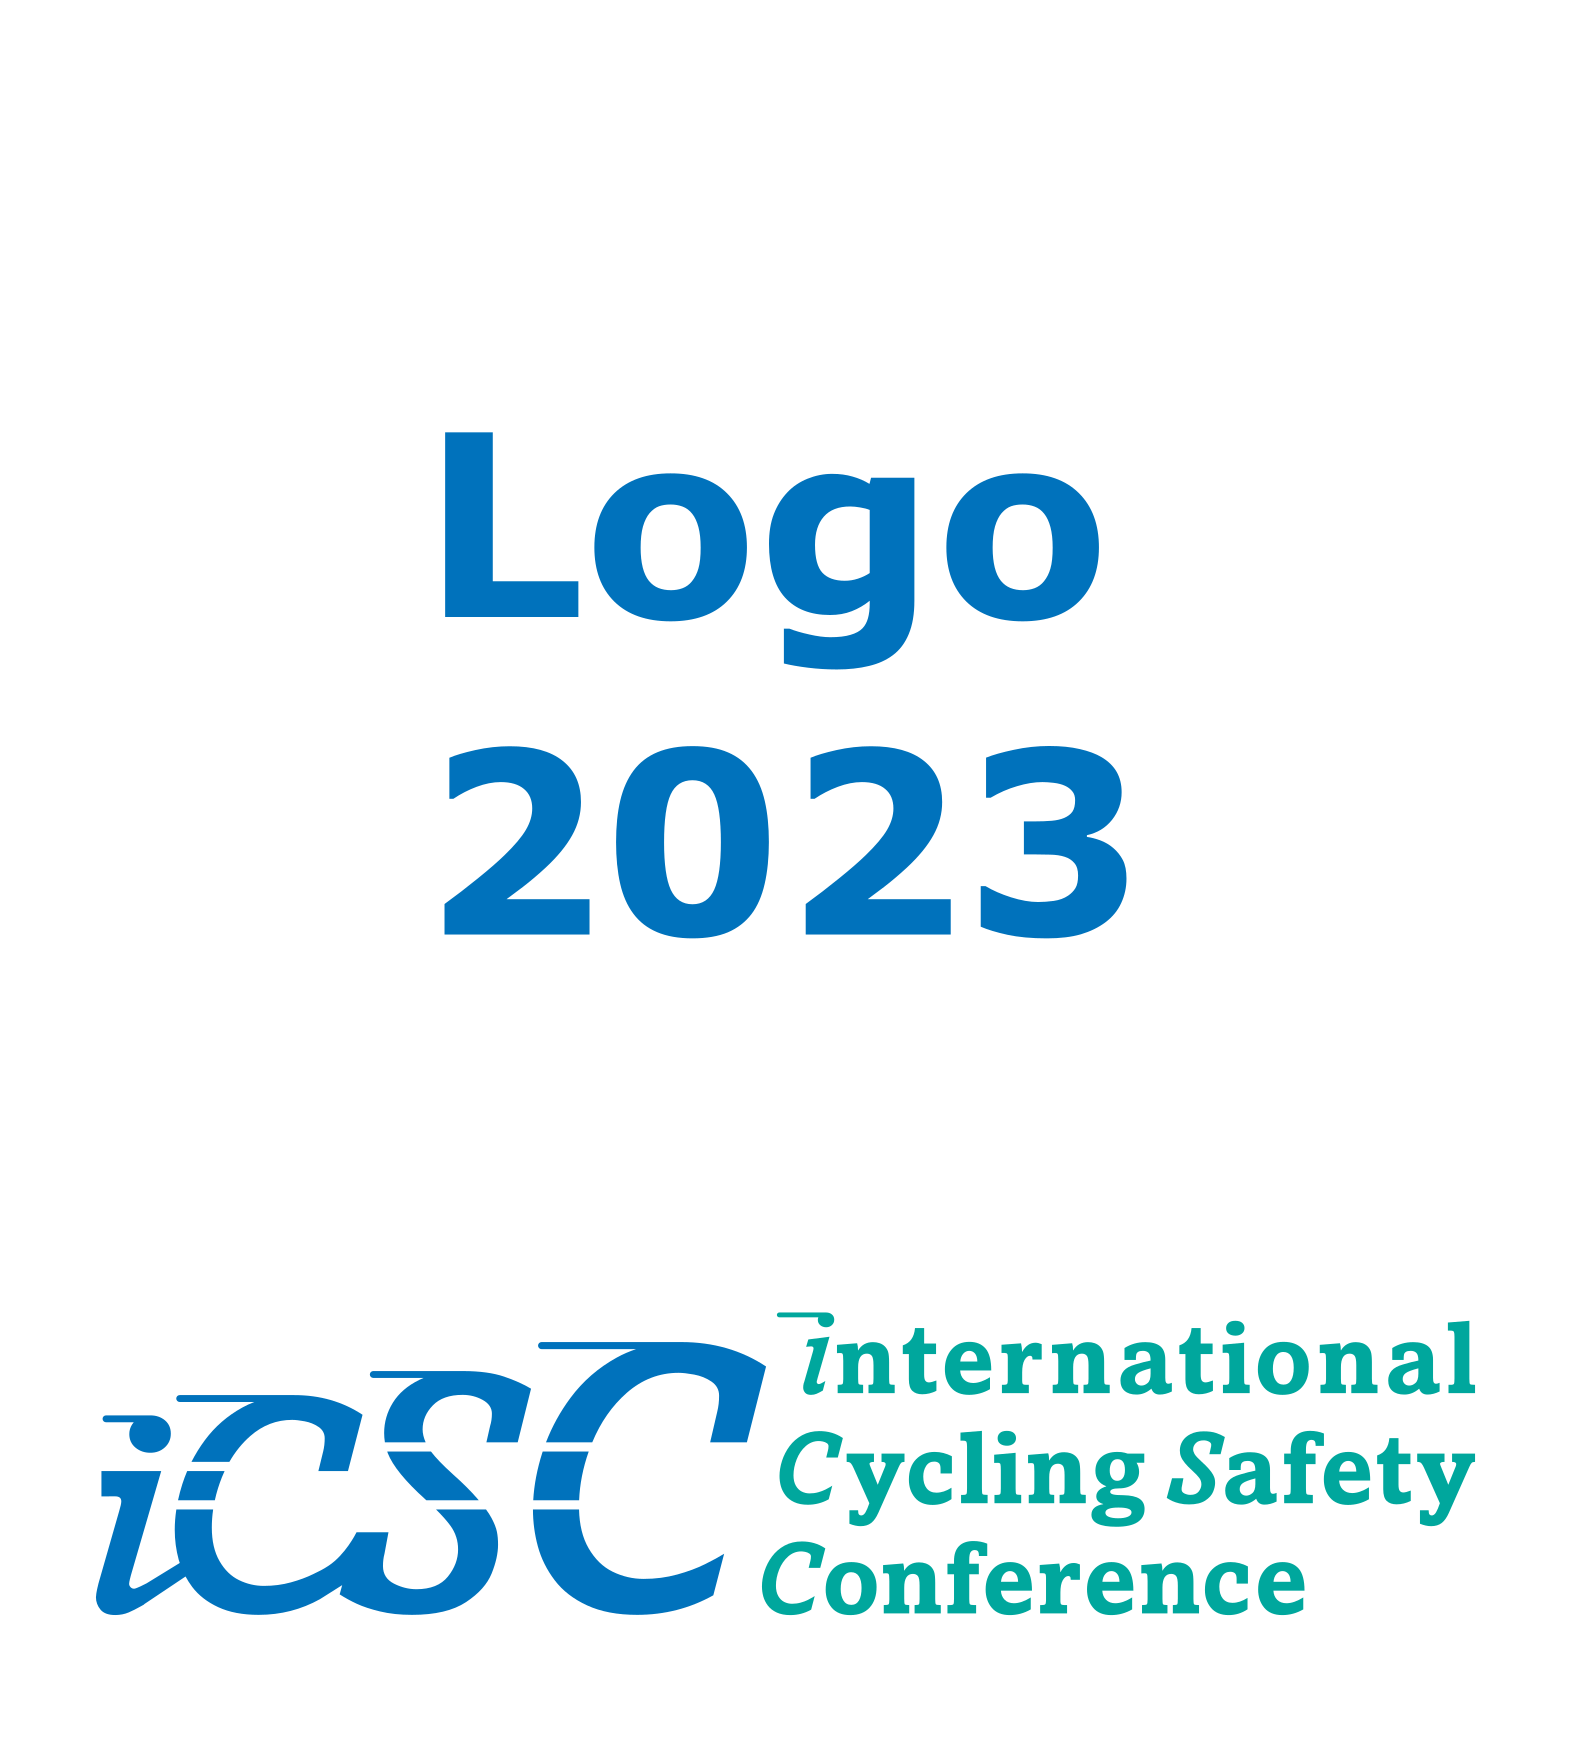 ICSC 2023